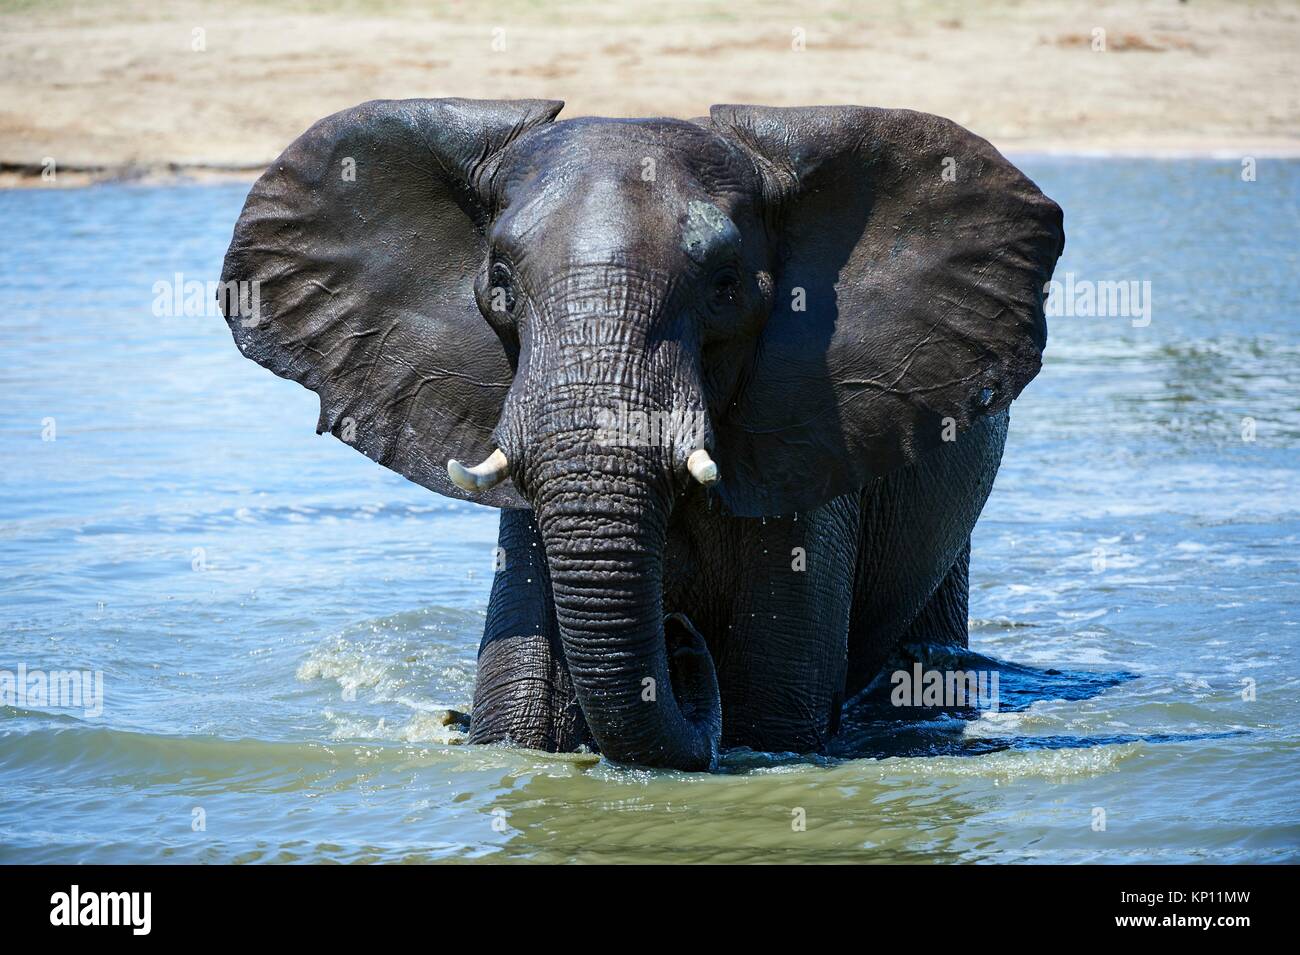 L'éléphant africain (Loxodonta africana) boire et se baigner dans un watehole. Le parc national de Hwange, Zimbabwe. Banque D'Images